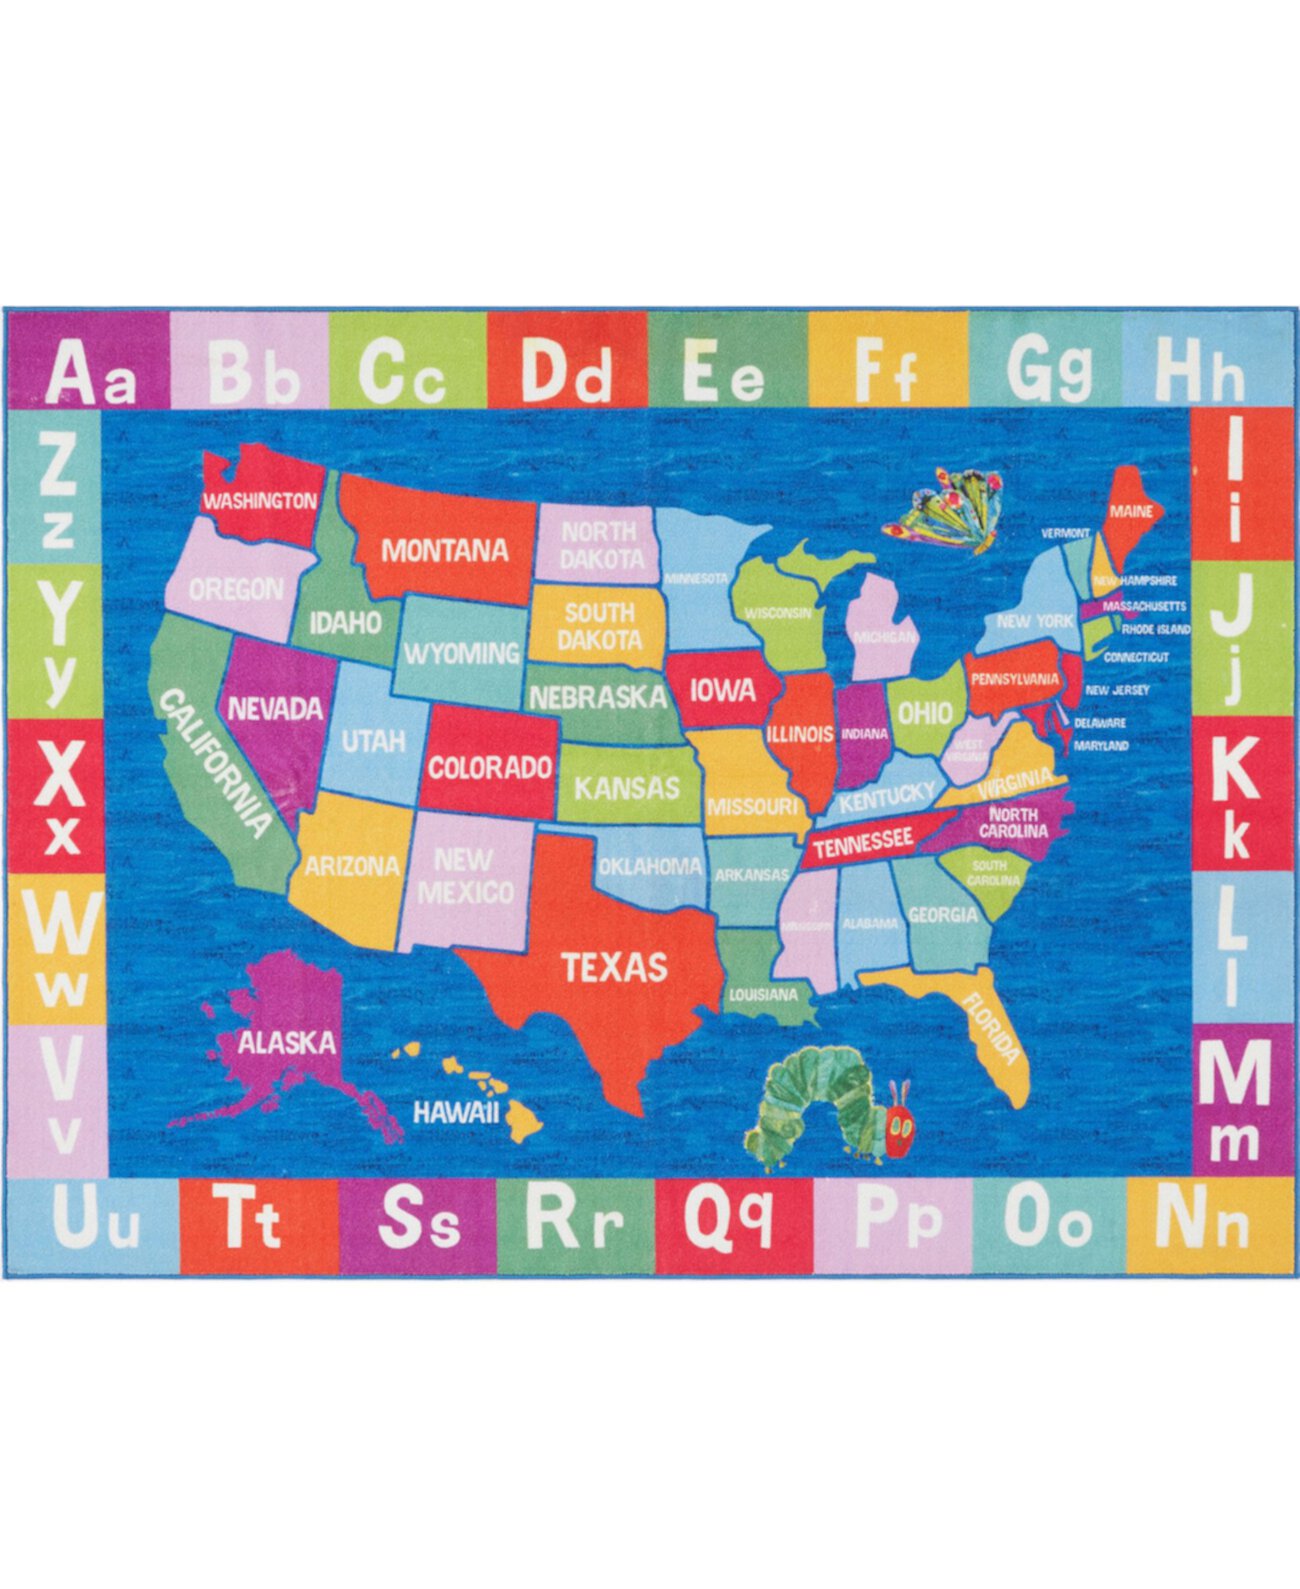 Синий коврик размером 6 футов 6 x 9 футов 5 дюймов с картой Elementary USA Eric Carle